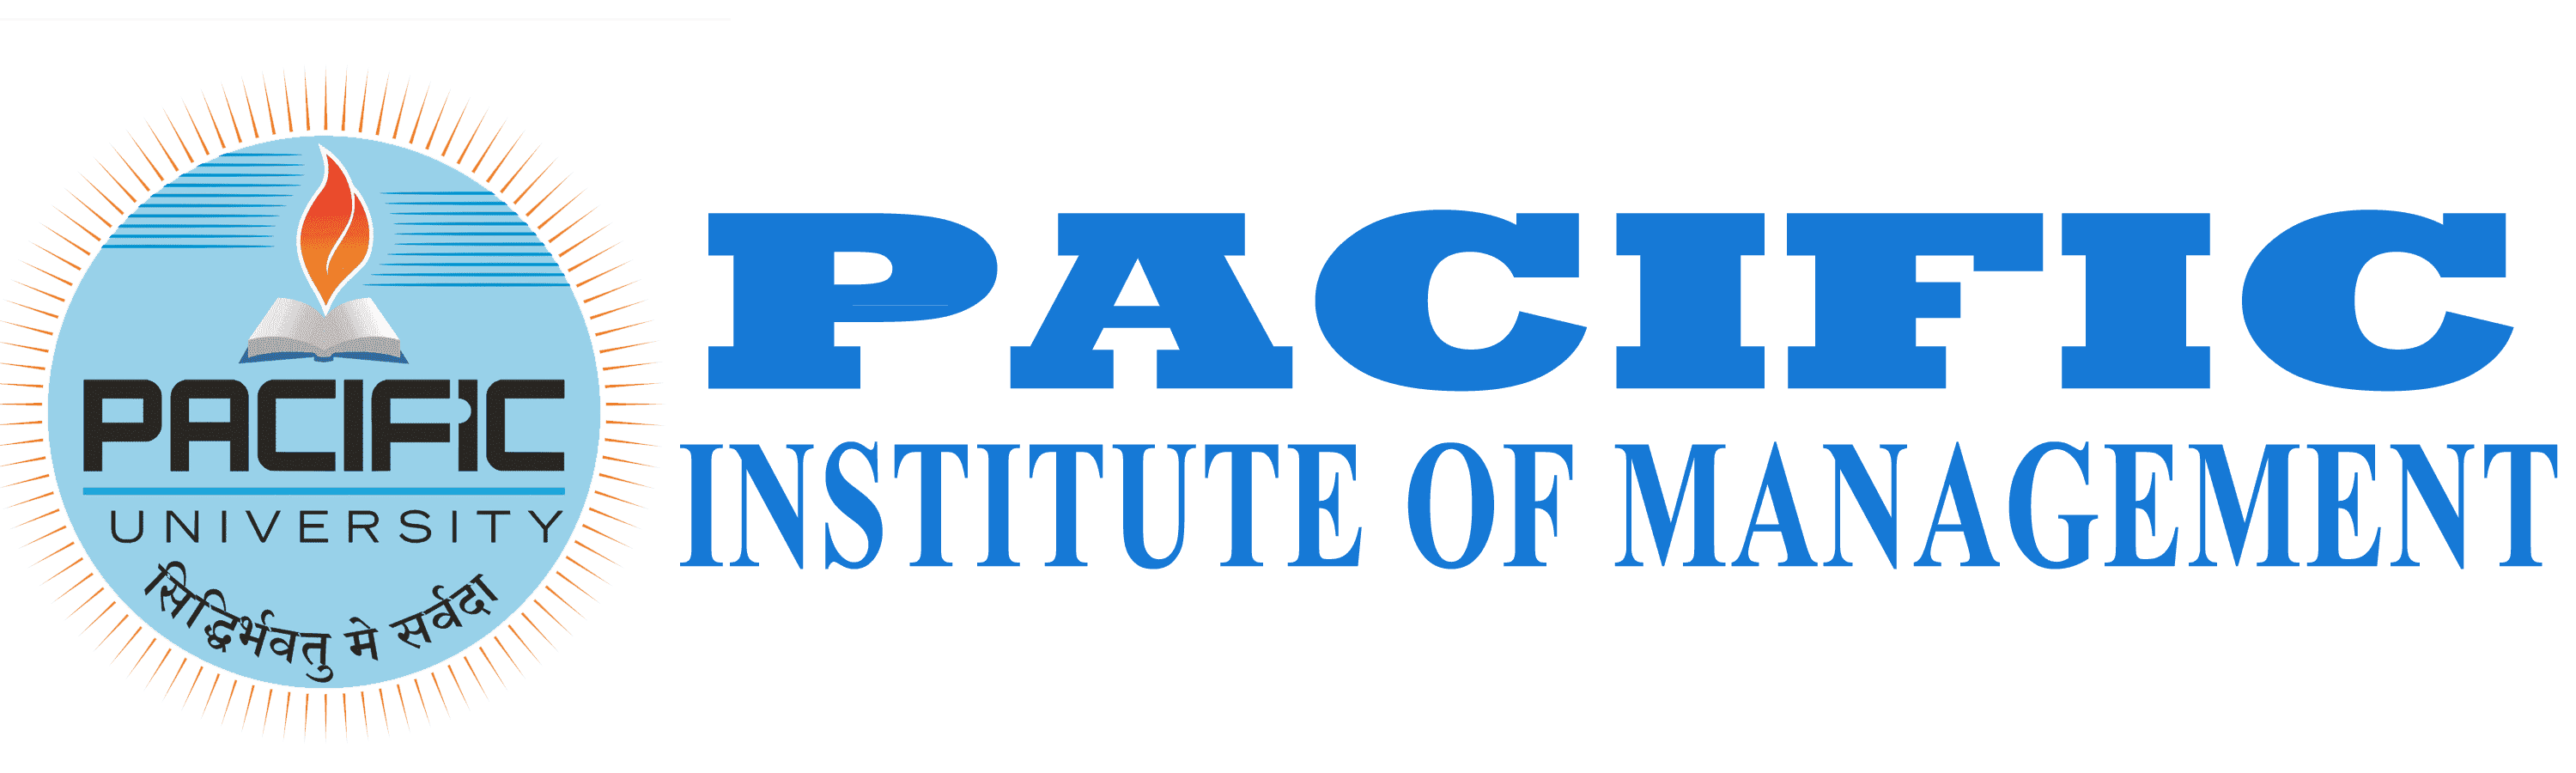 Pacific Institute of Management